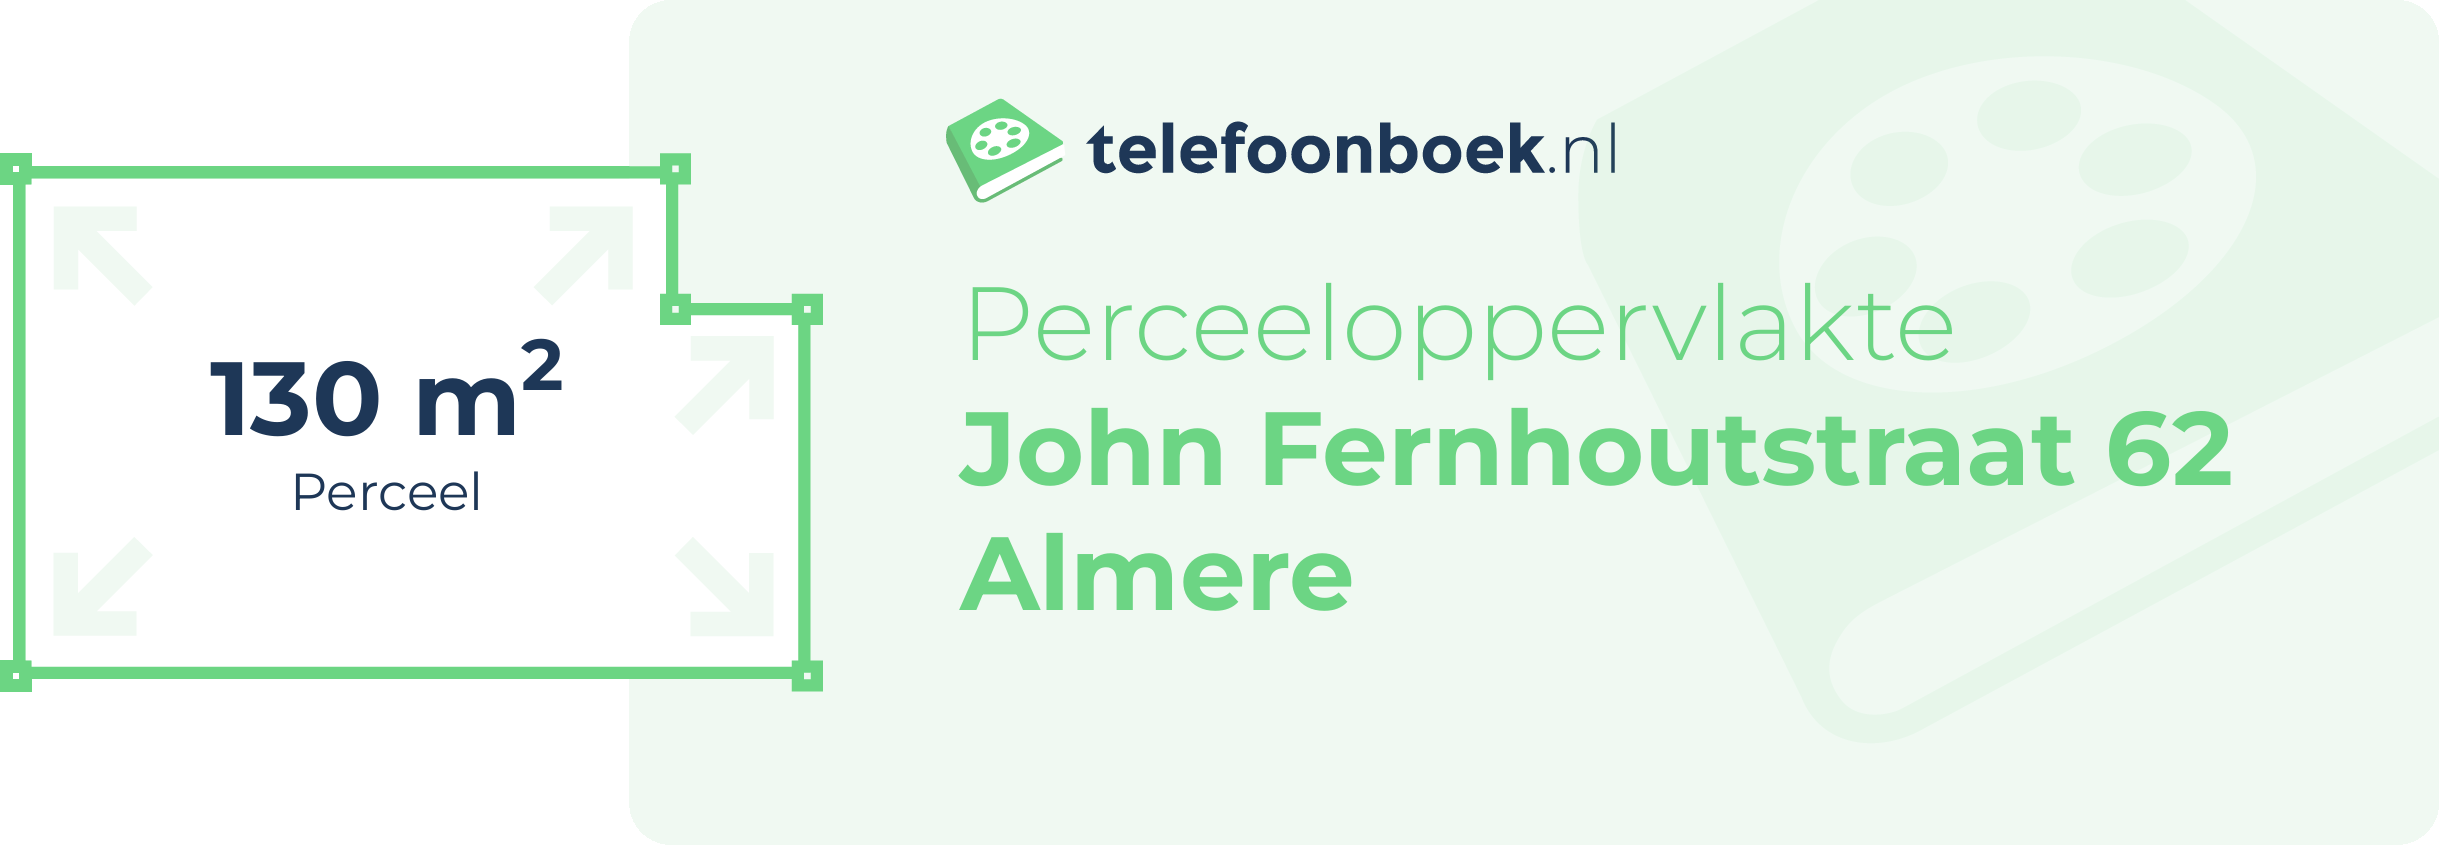 Perceeloppervlakte John Fernhoutstraat 62 Almere